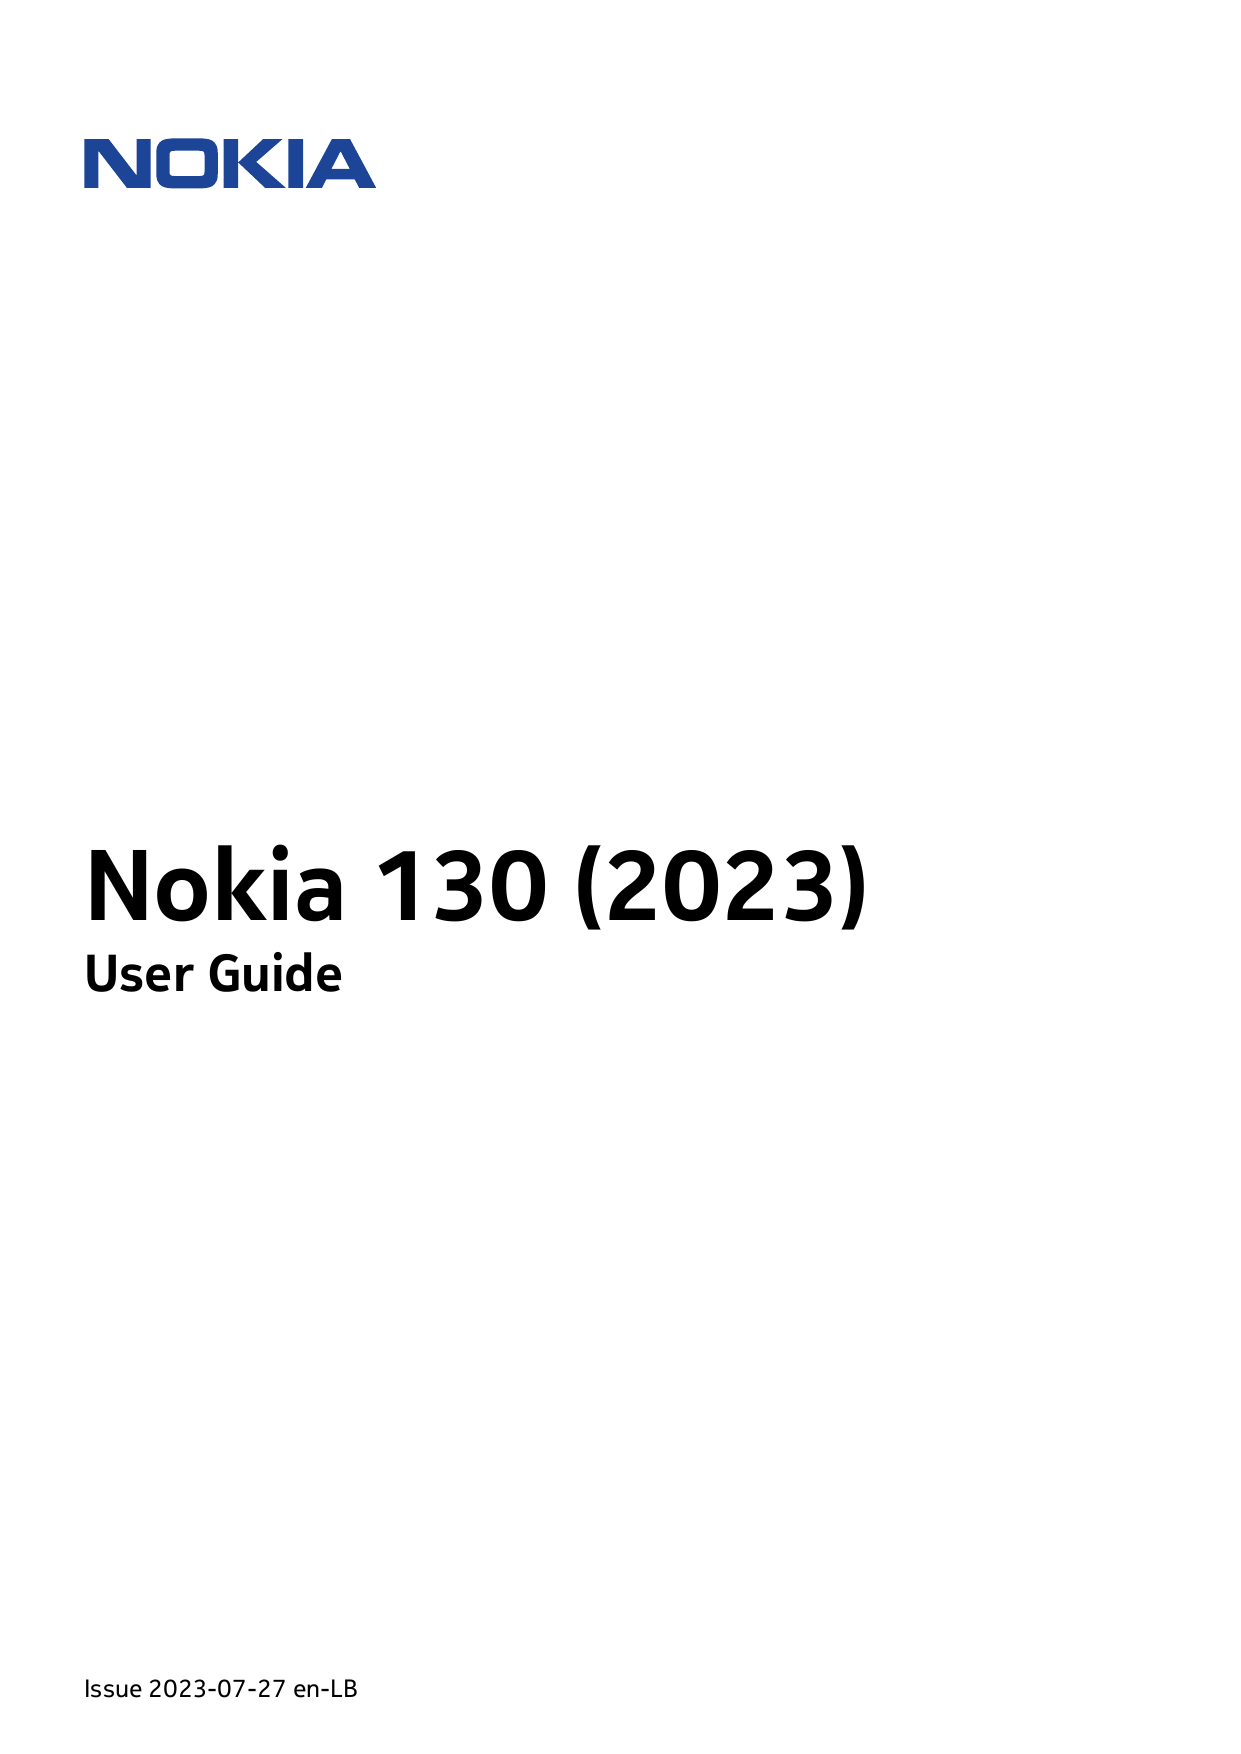 Nokia 130 (2023)User GuideIssue 2023-07-27 en-LB